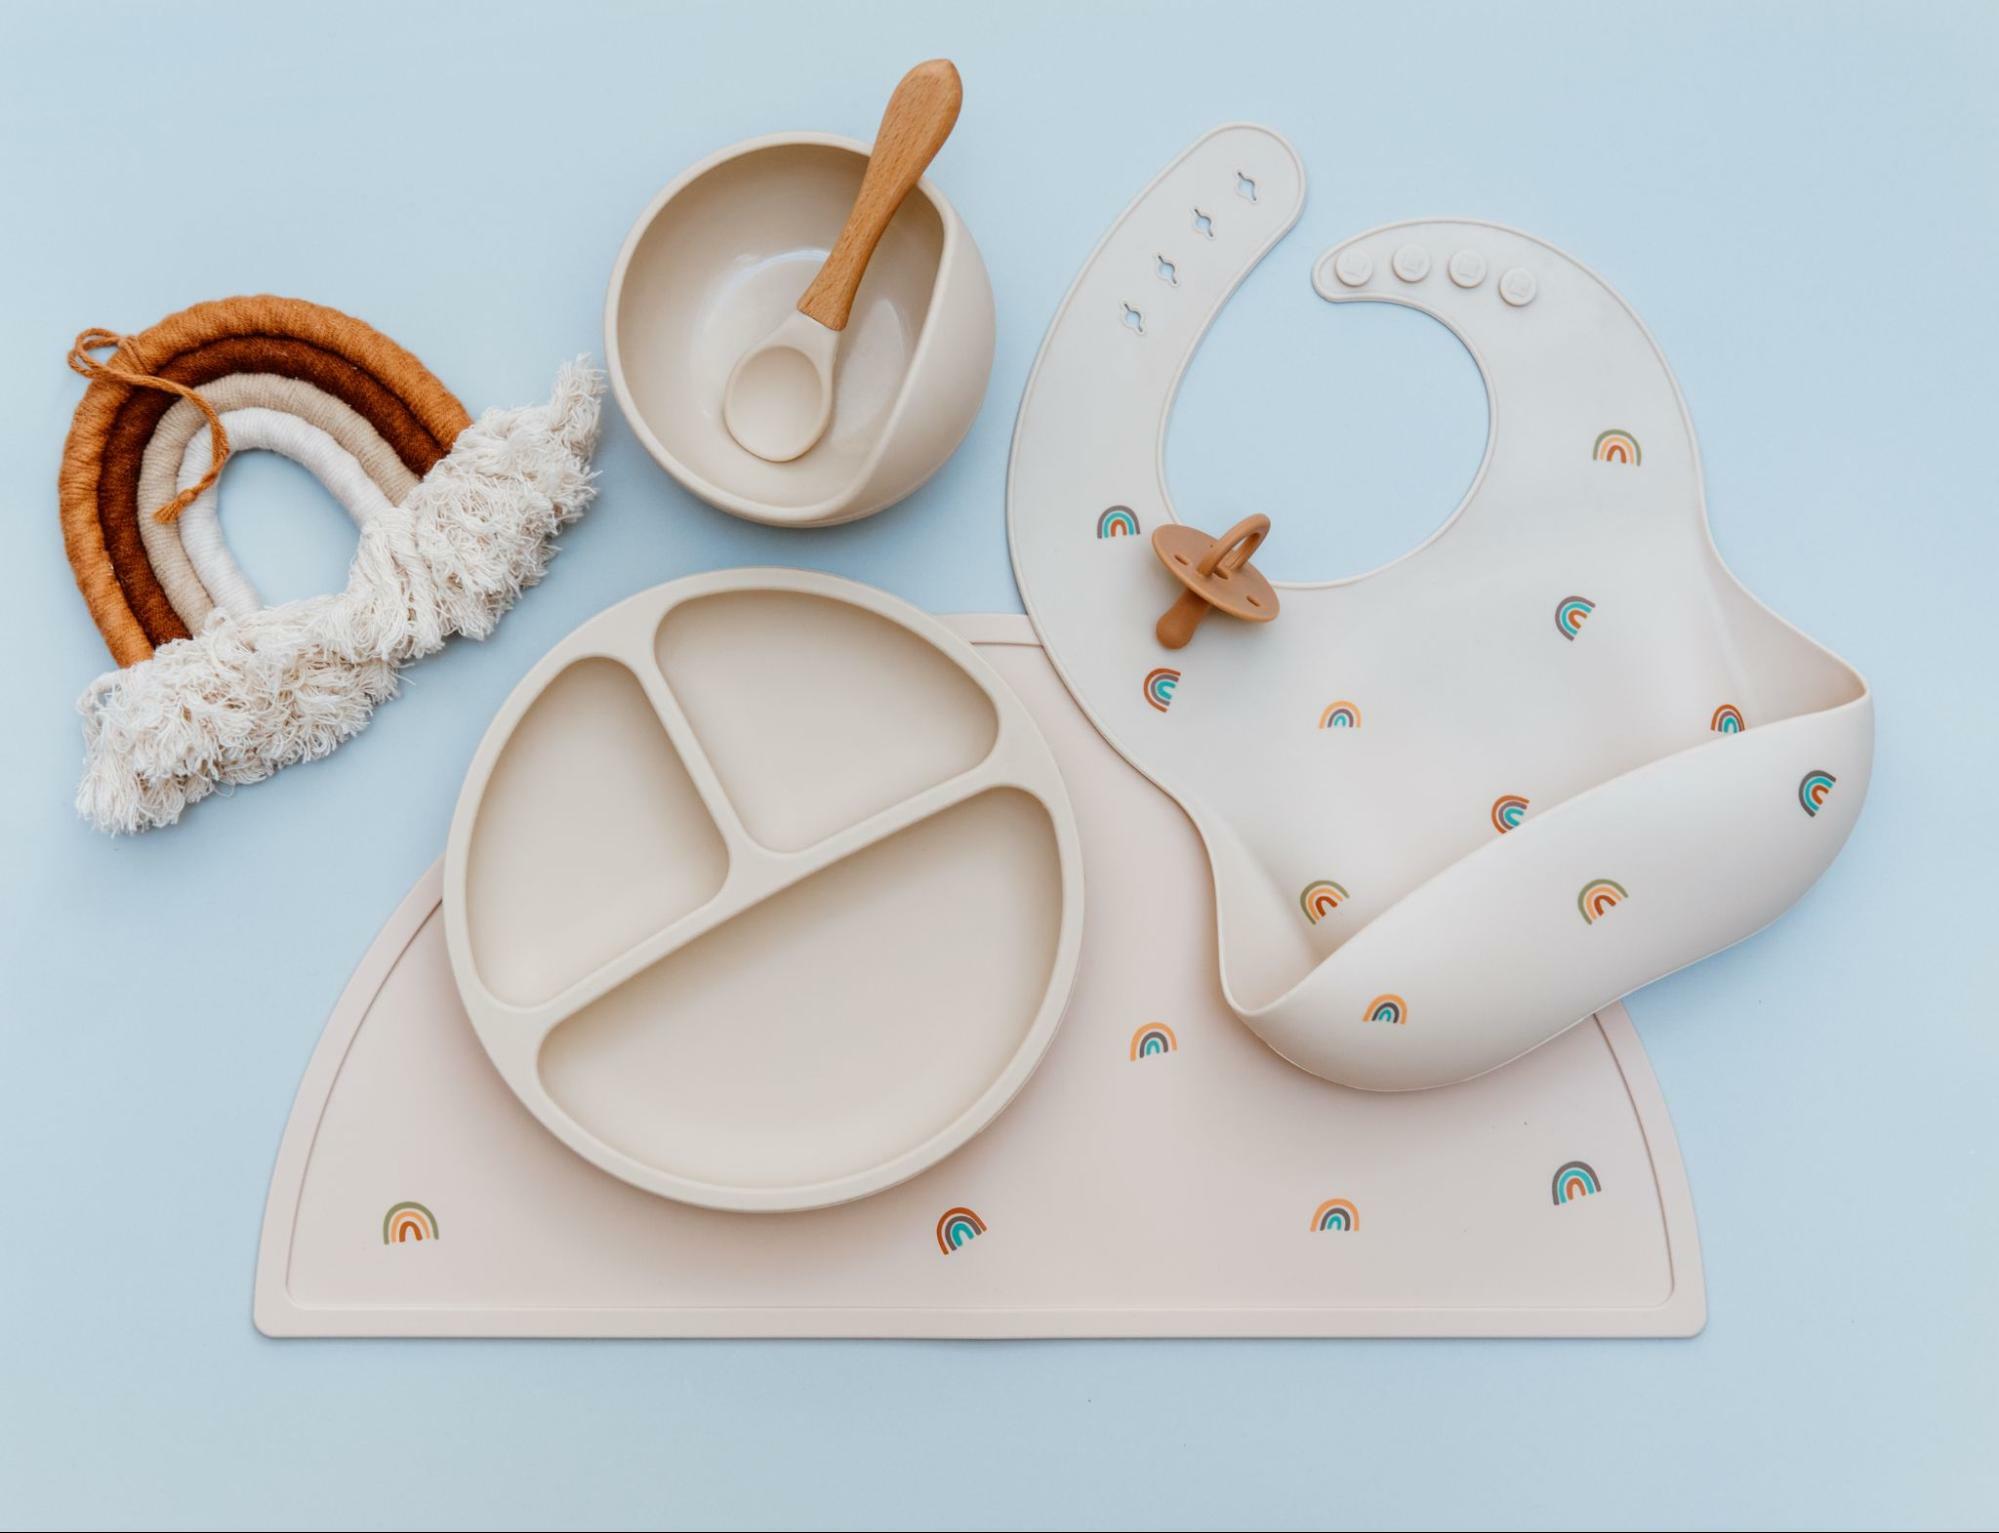 造型簡單的款式為寶寶餐具選擇要點之一